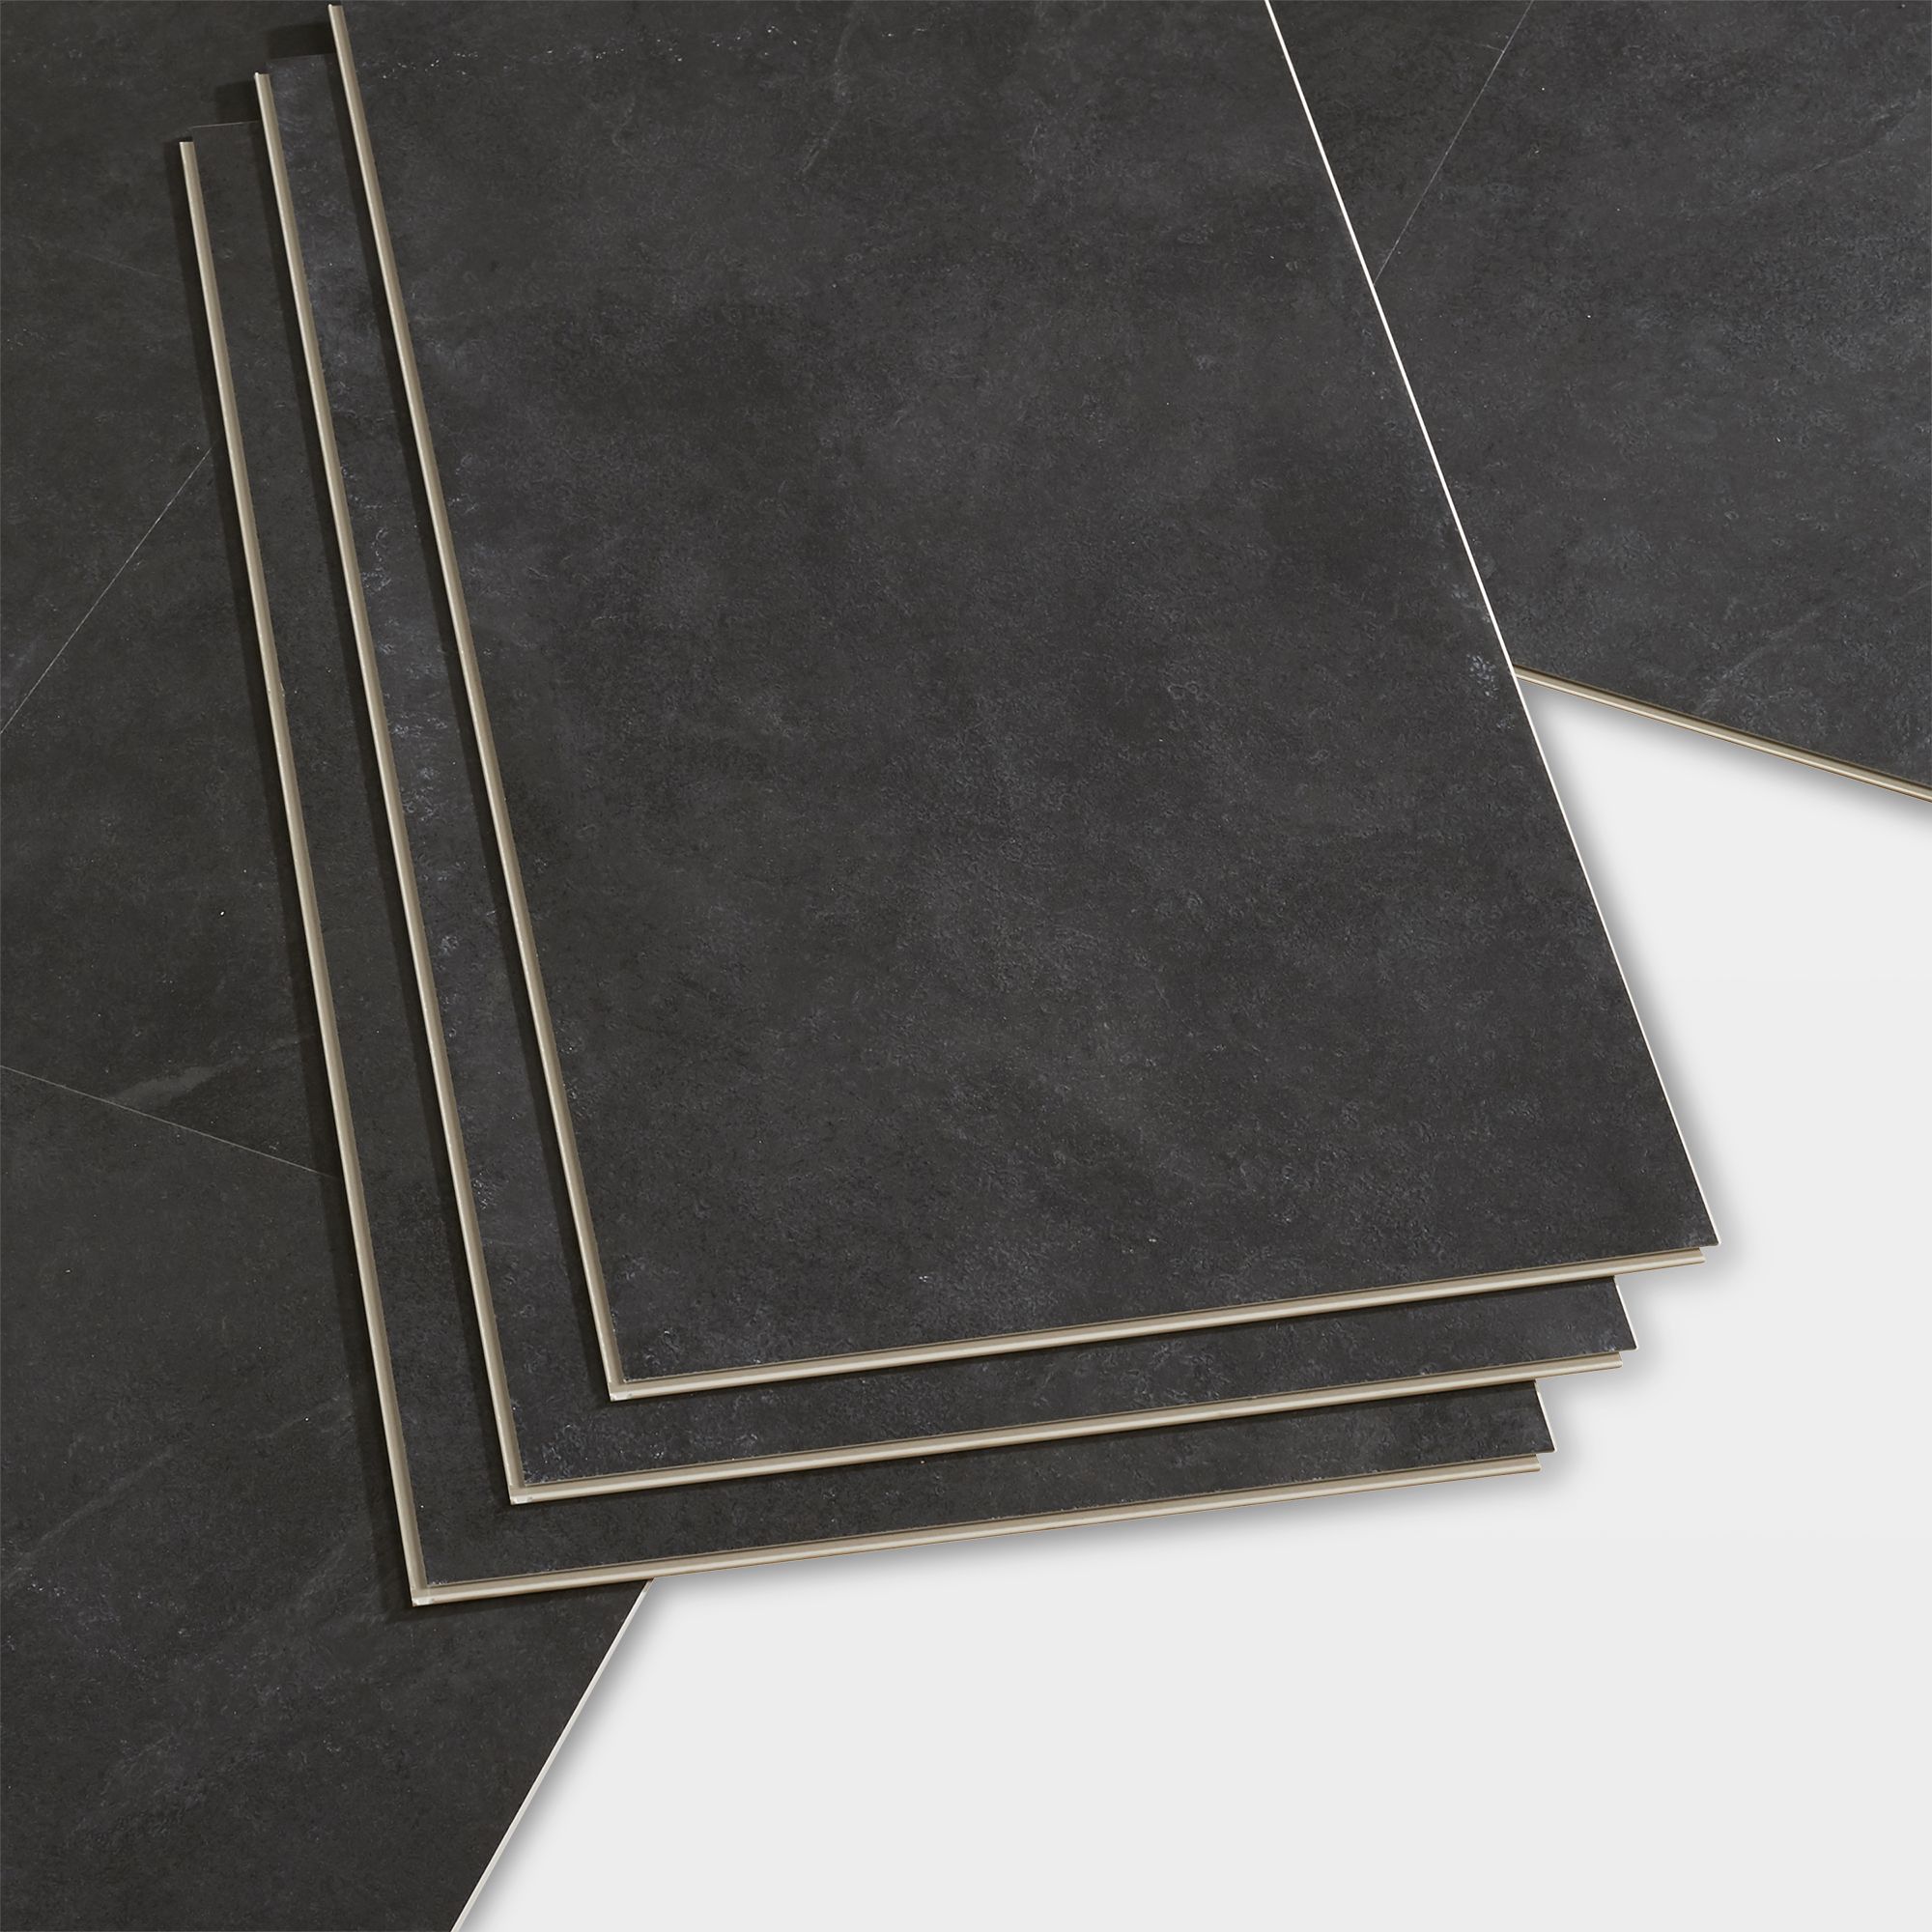 GoodHome Bachata Slate Tile Effect Luxury Vinyl Click Flooring, 2.6M² Pack